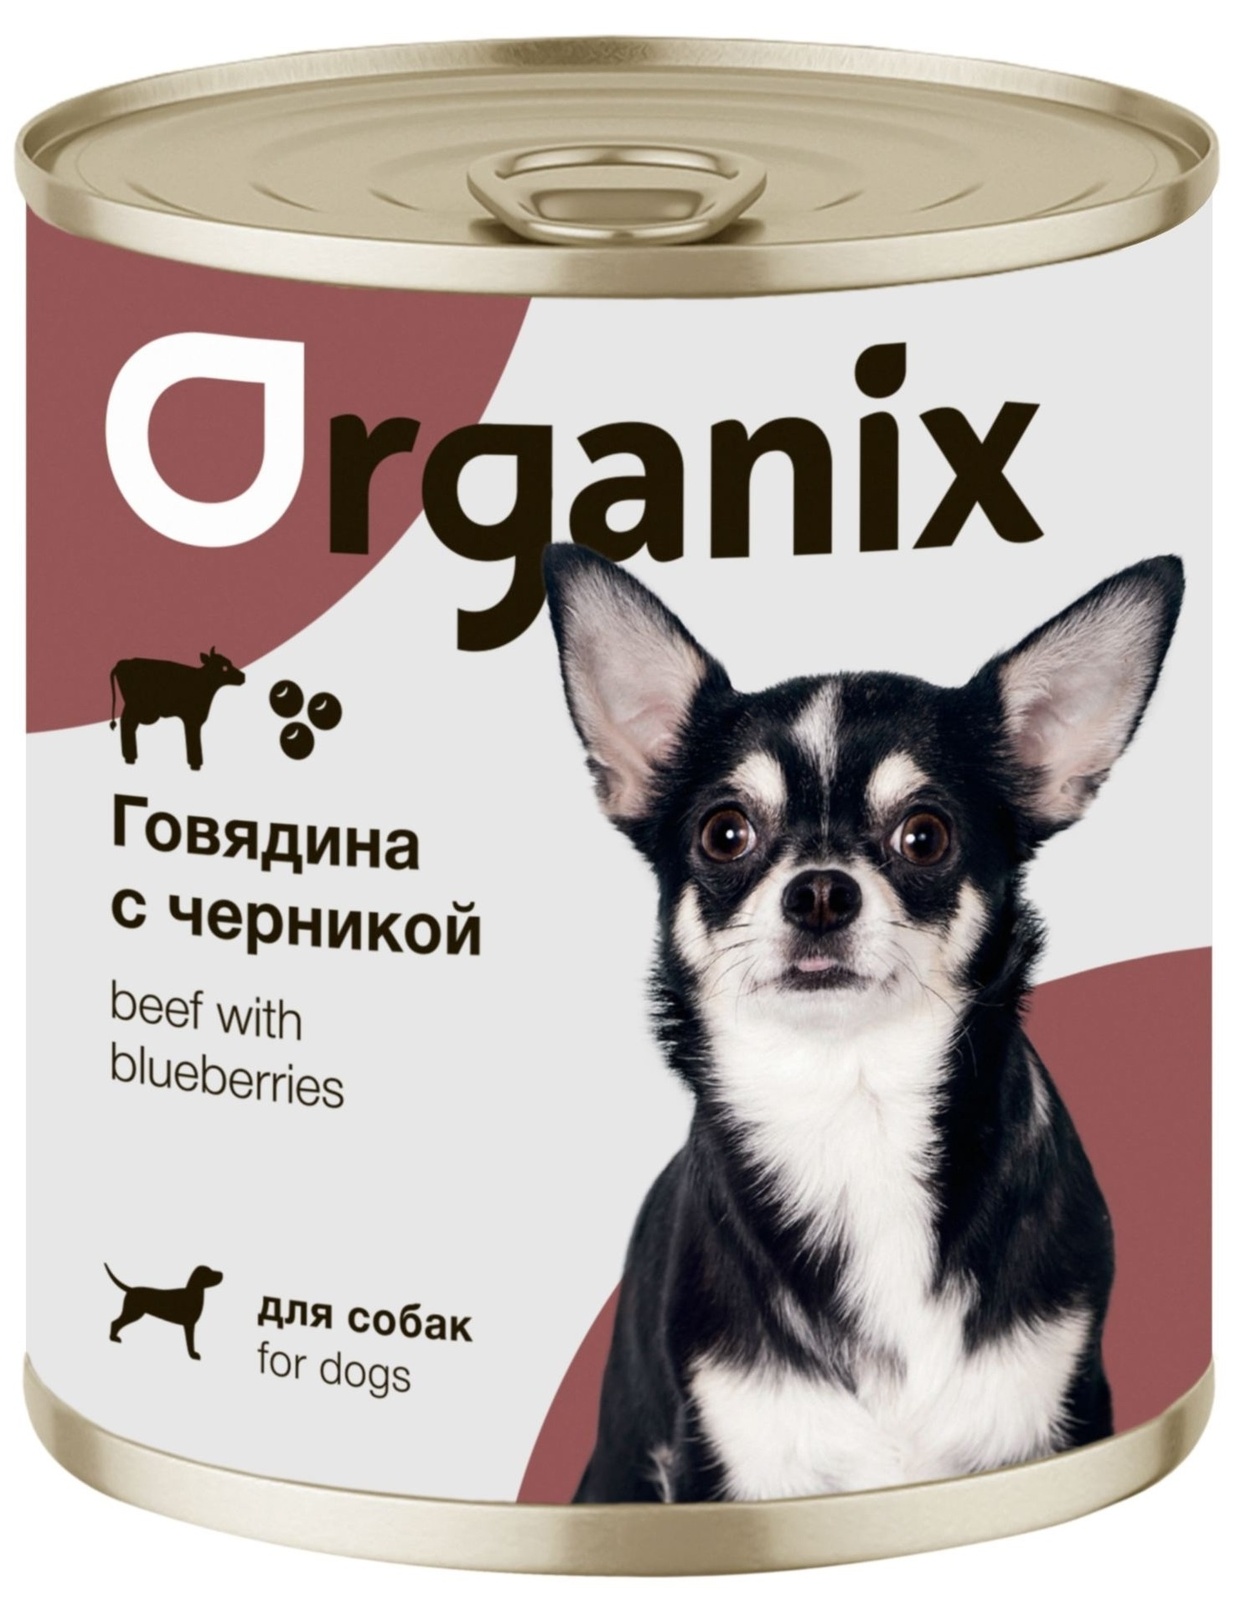 Organix консервы Organix консервы для собак Заливное из говядины с черникой (100 г)